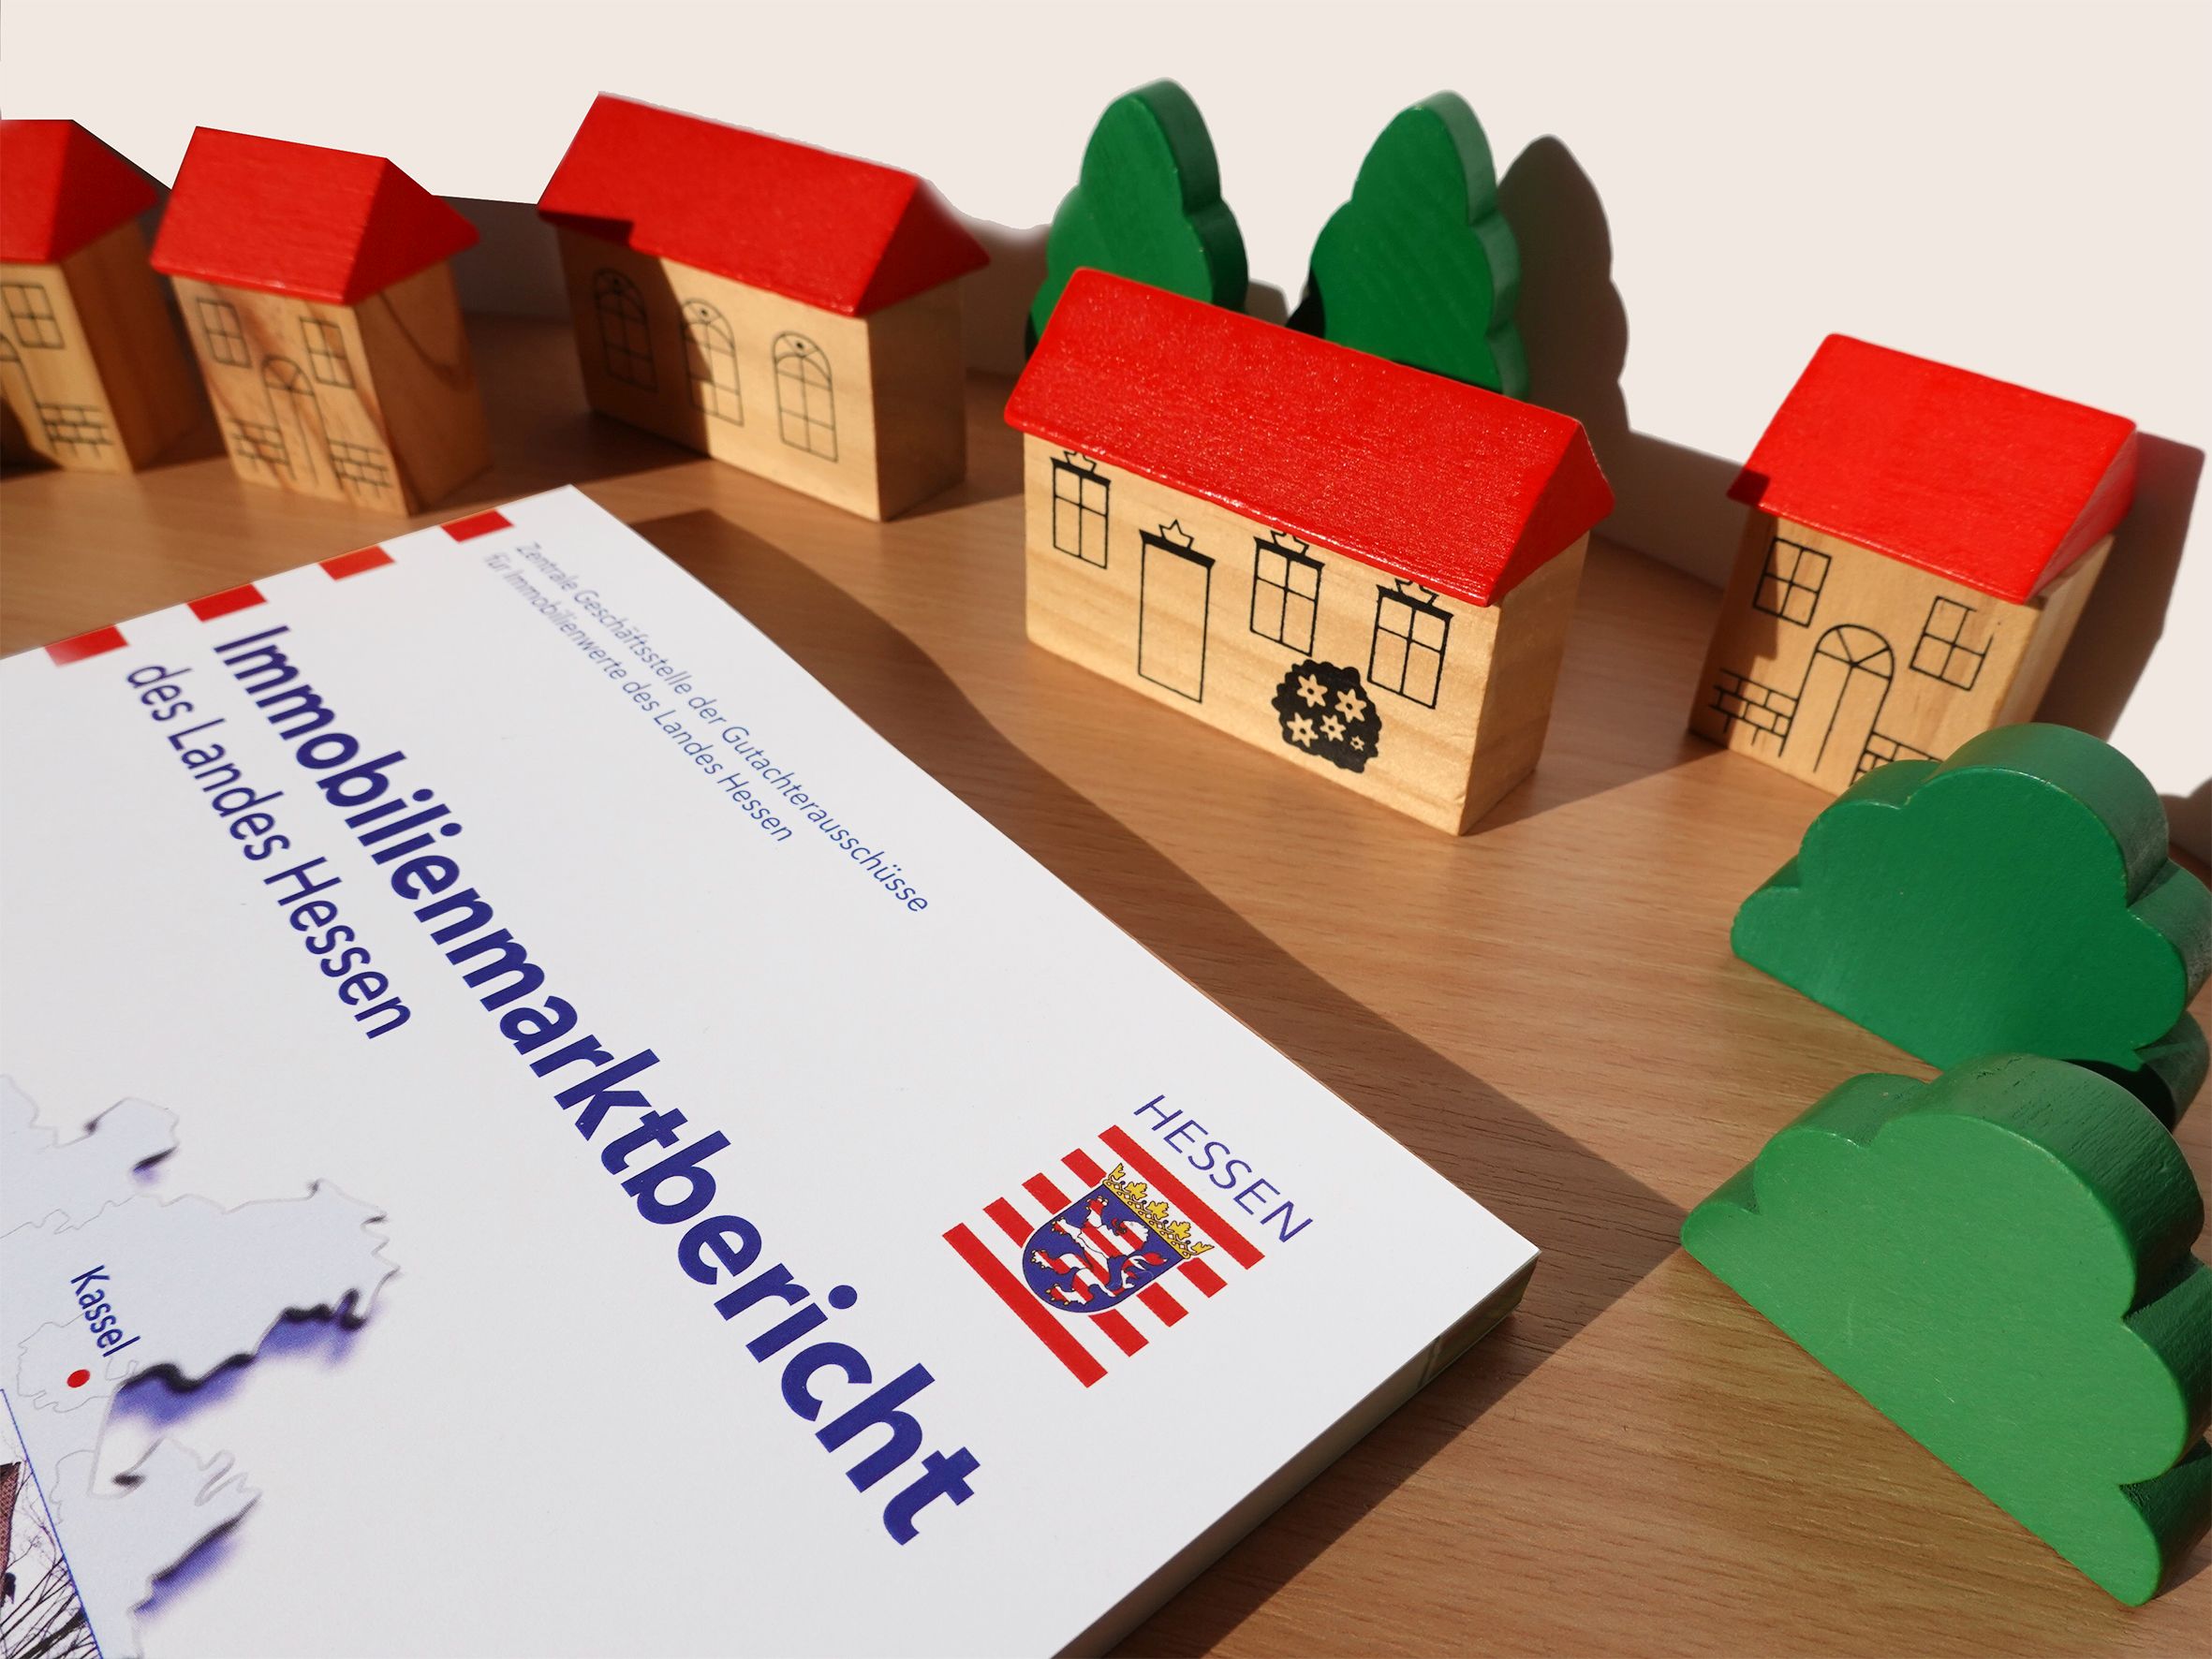 Bild (c) Zentrale Geschäftsstelle der Gutachterausschüsse für Immobilienwerte des Landes Hessen (ZGGH)